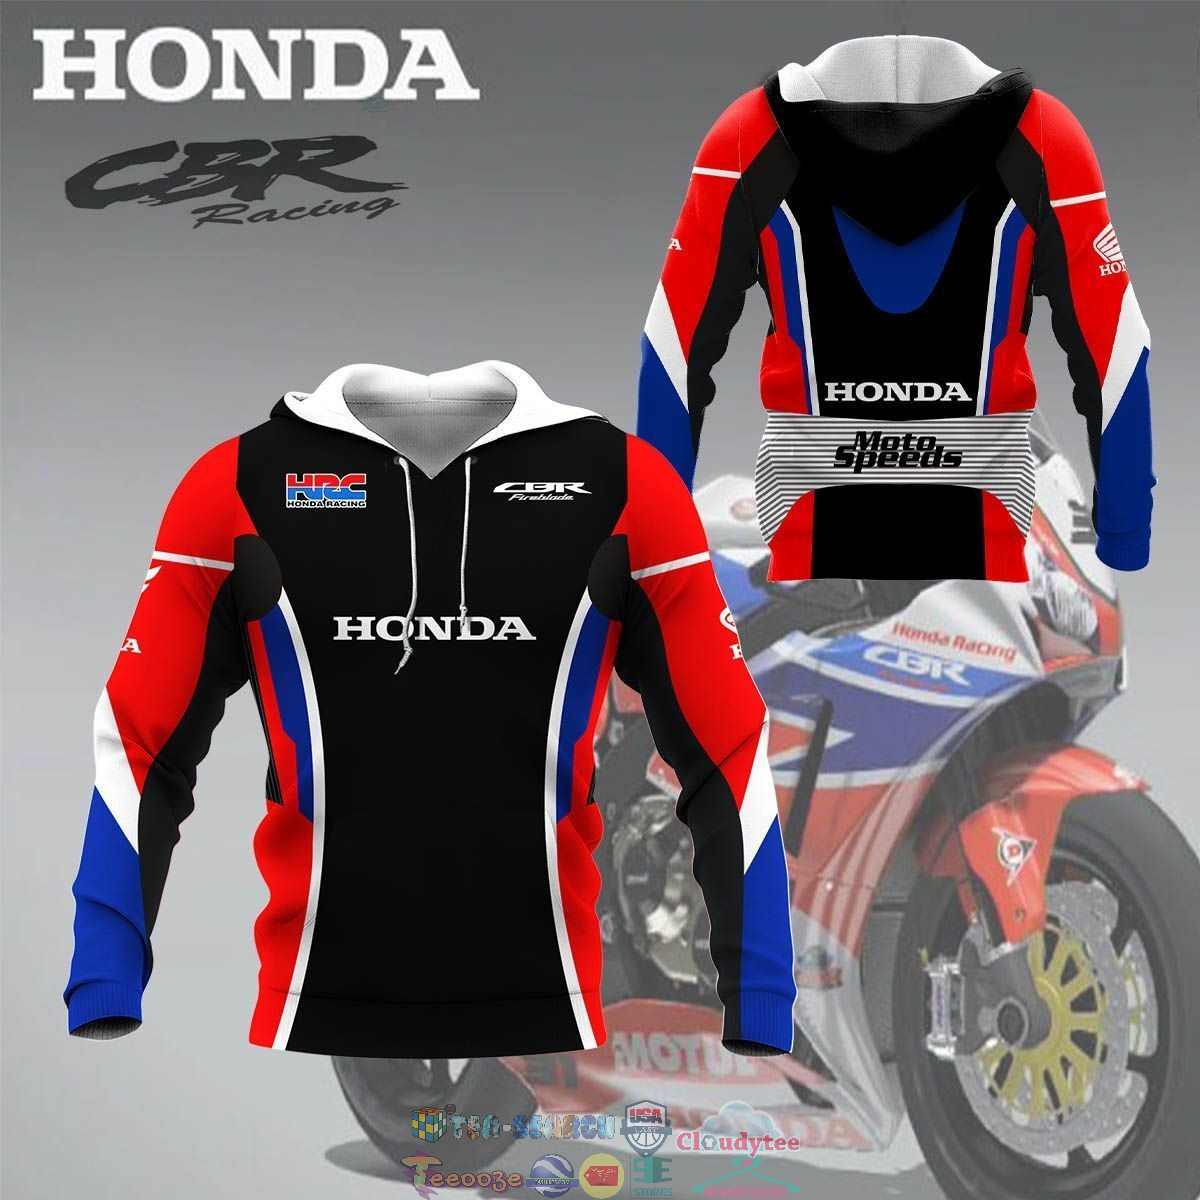 QqggxbOS-TH100822-04xxxHRC-Honda-Racing-3D-hoodie-and-t-shirt3.jpg